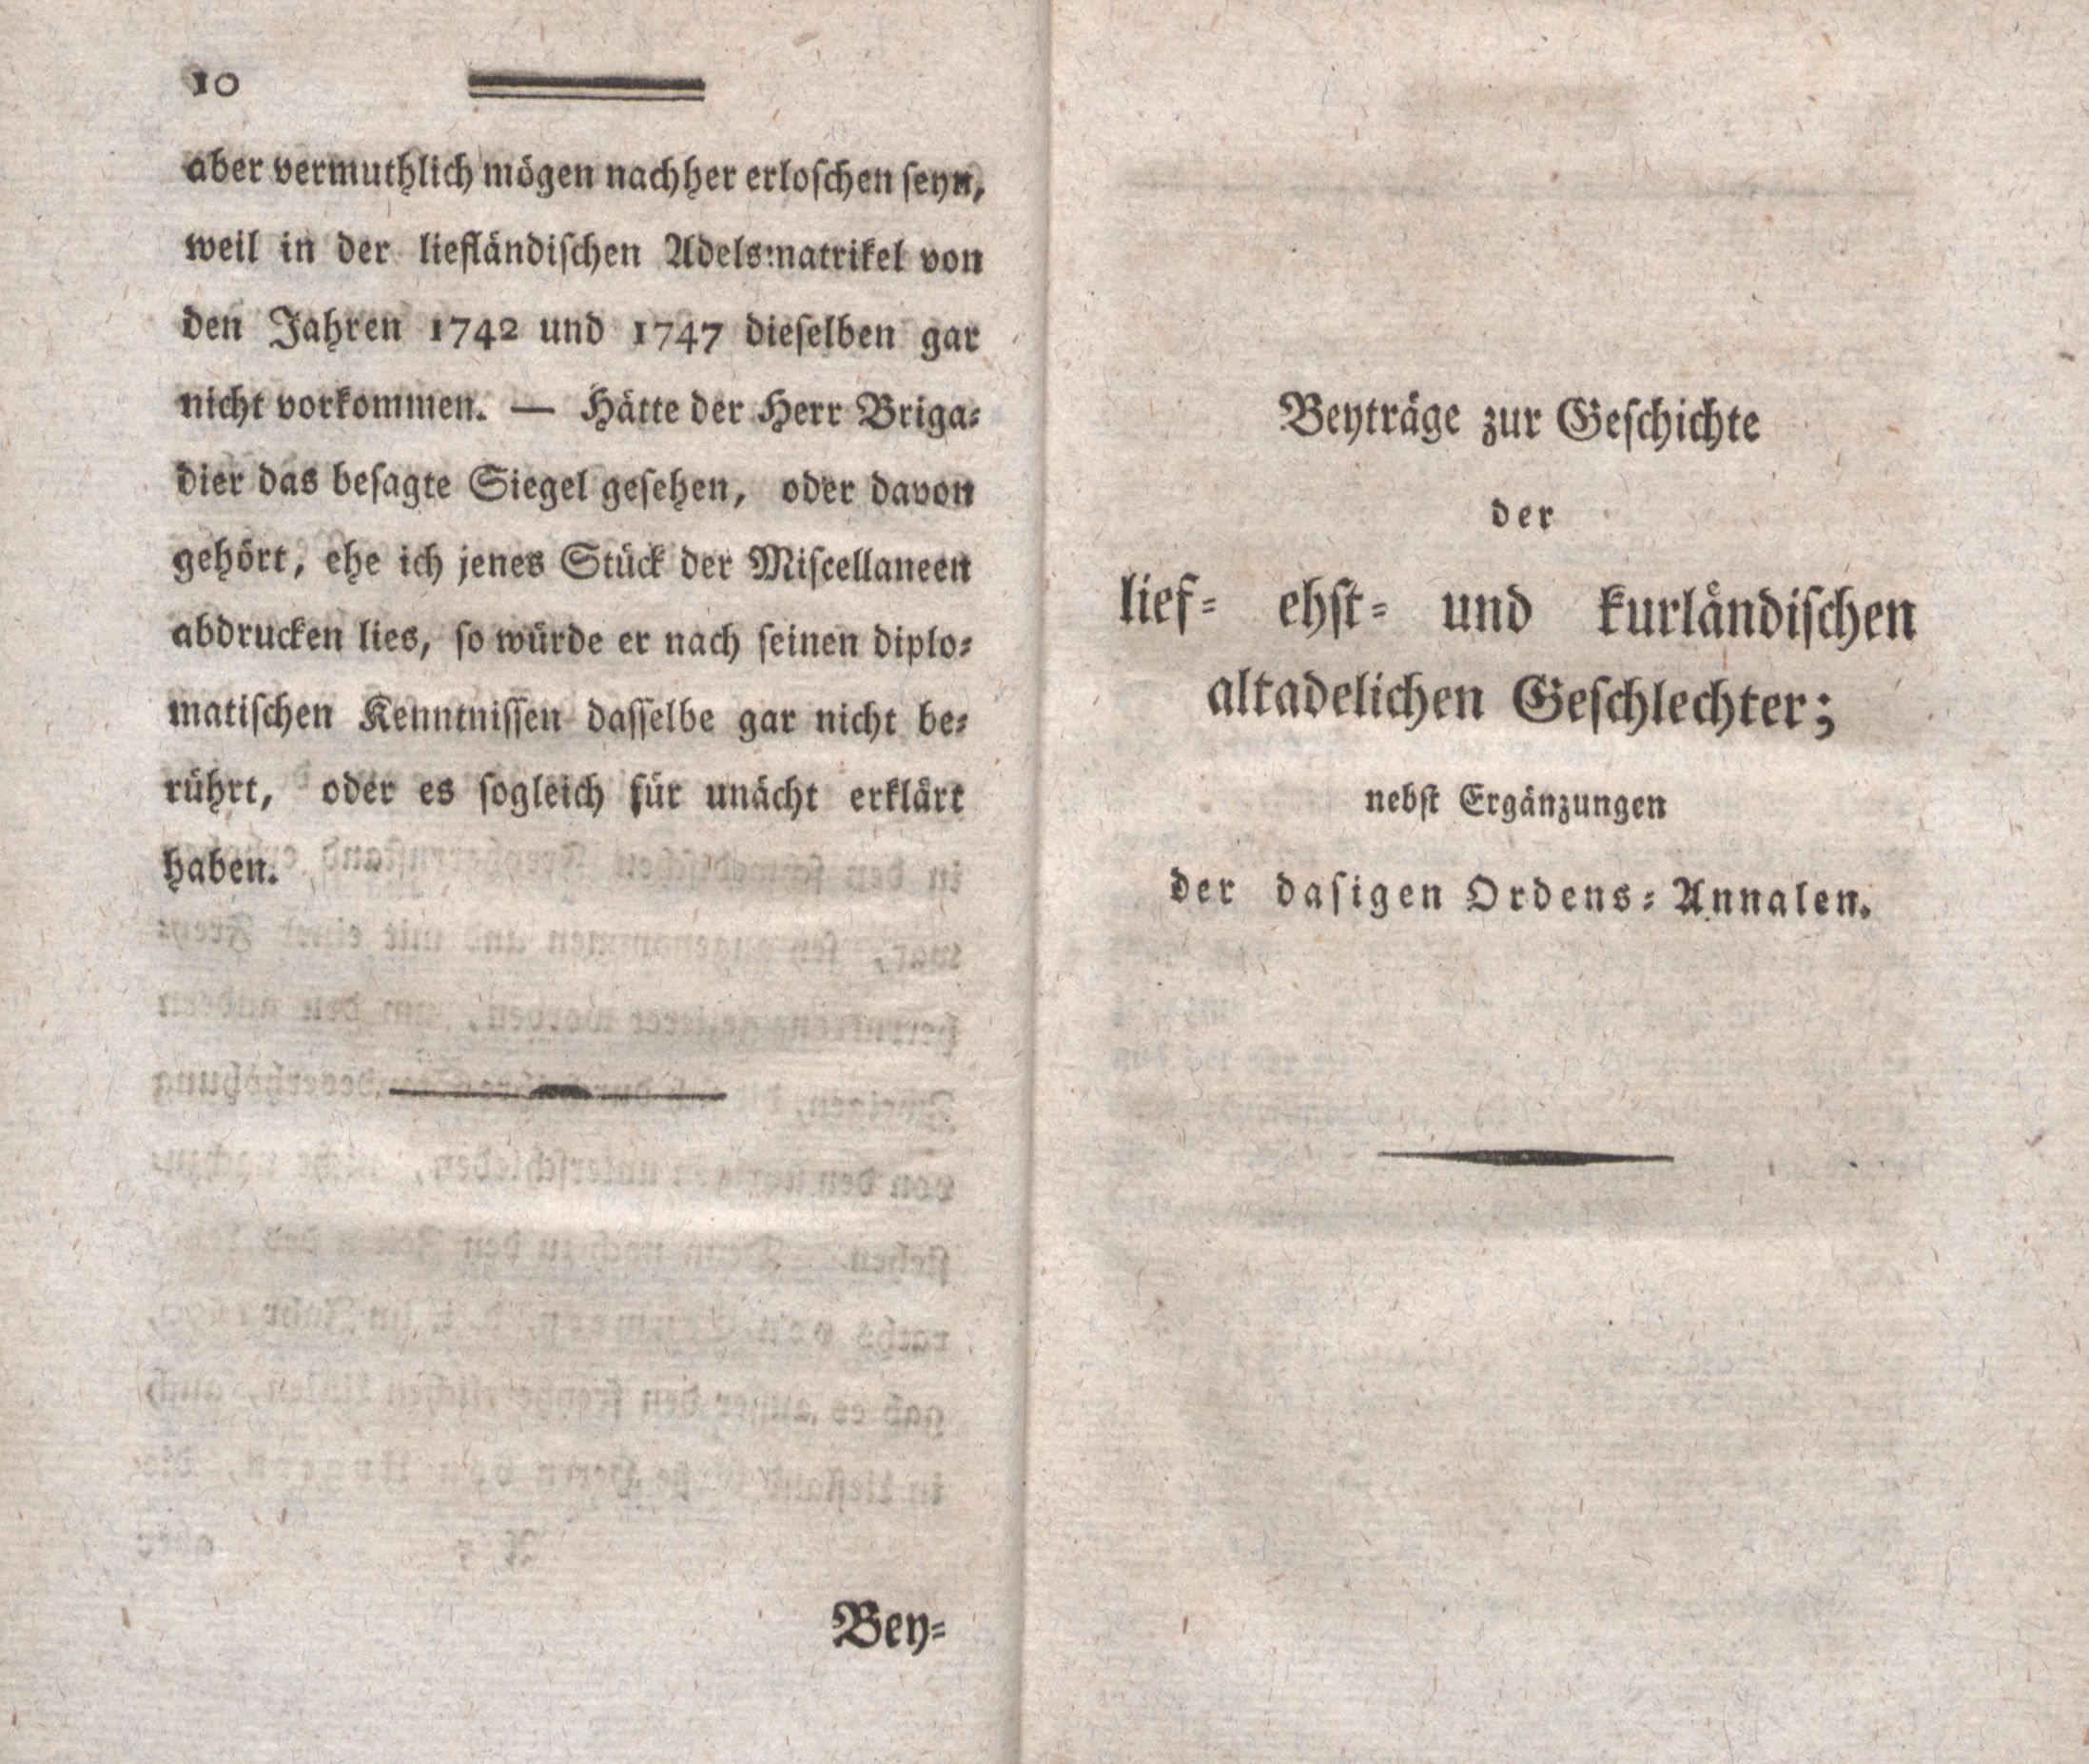 Beyträge zur Geschichte der lief-, ehst- und kurländischen altadelichen Geschlechter (1794) | 1. (10-11) Vorwort, Haupttext